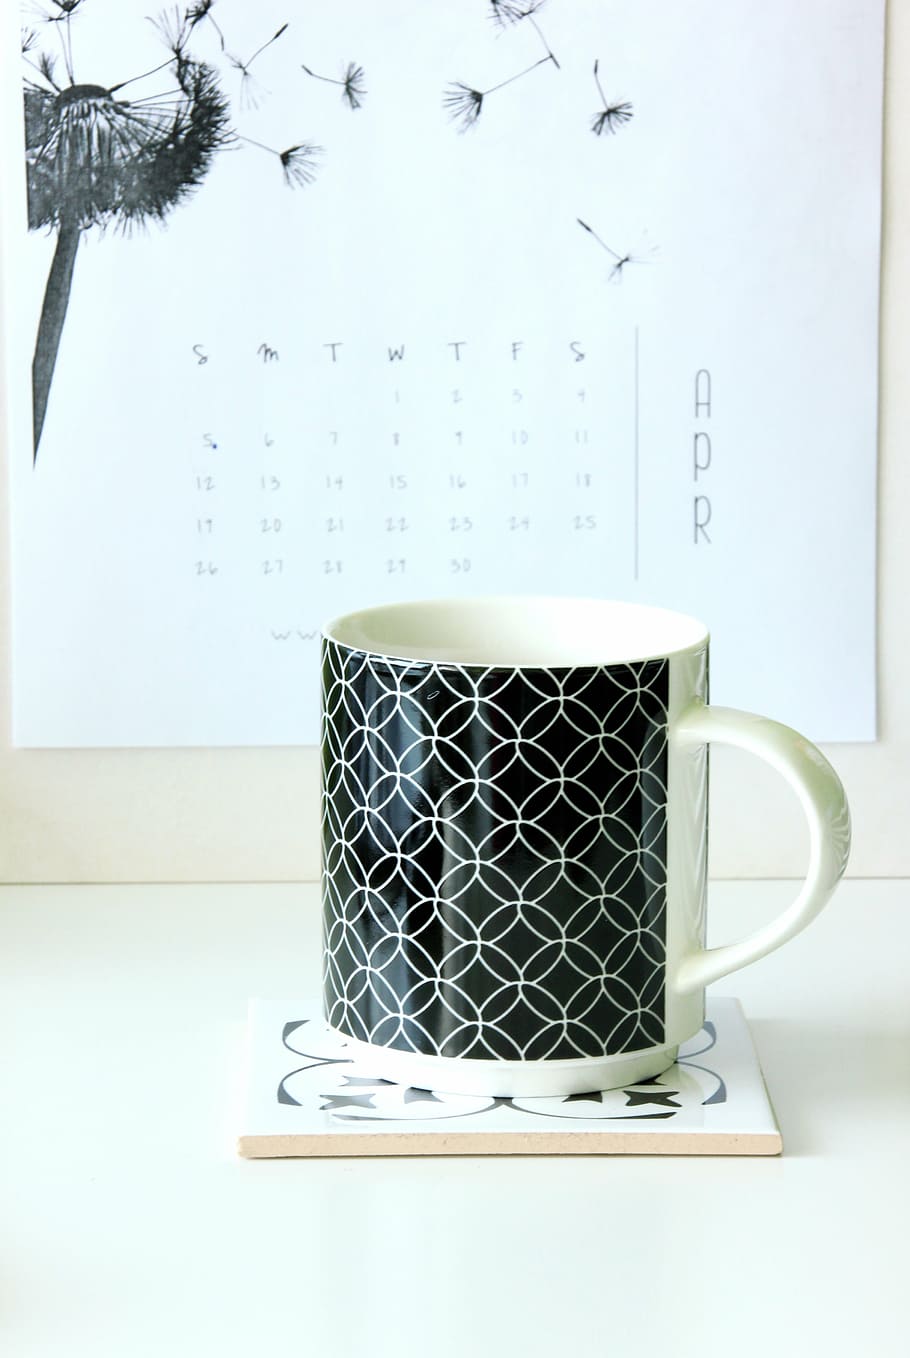 blanco, negro, cerámica, taza, posavasos, mesa de trabajo, calendario, café, la bebida, mesa